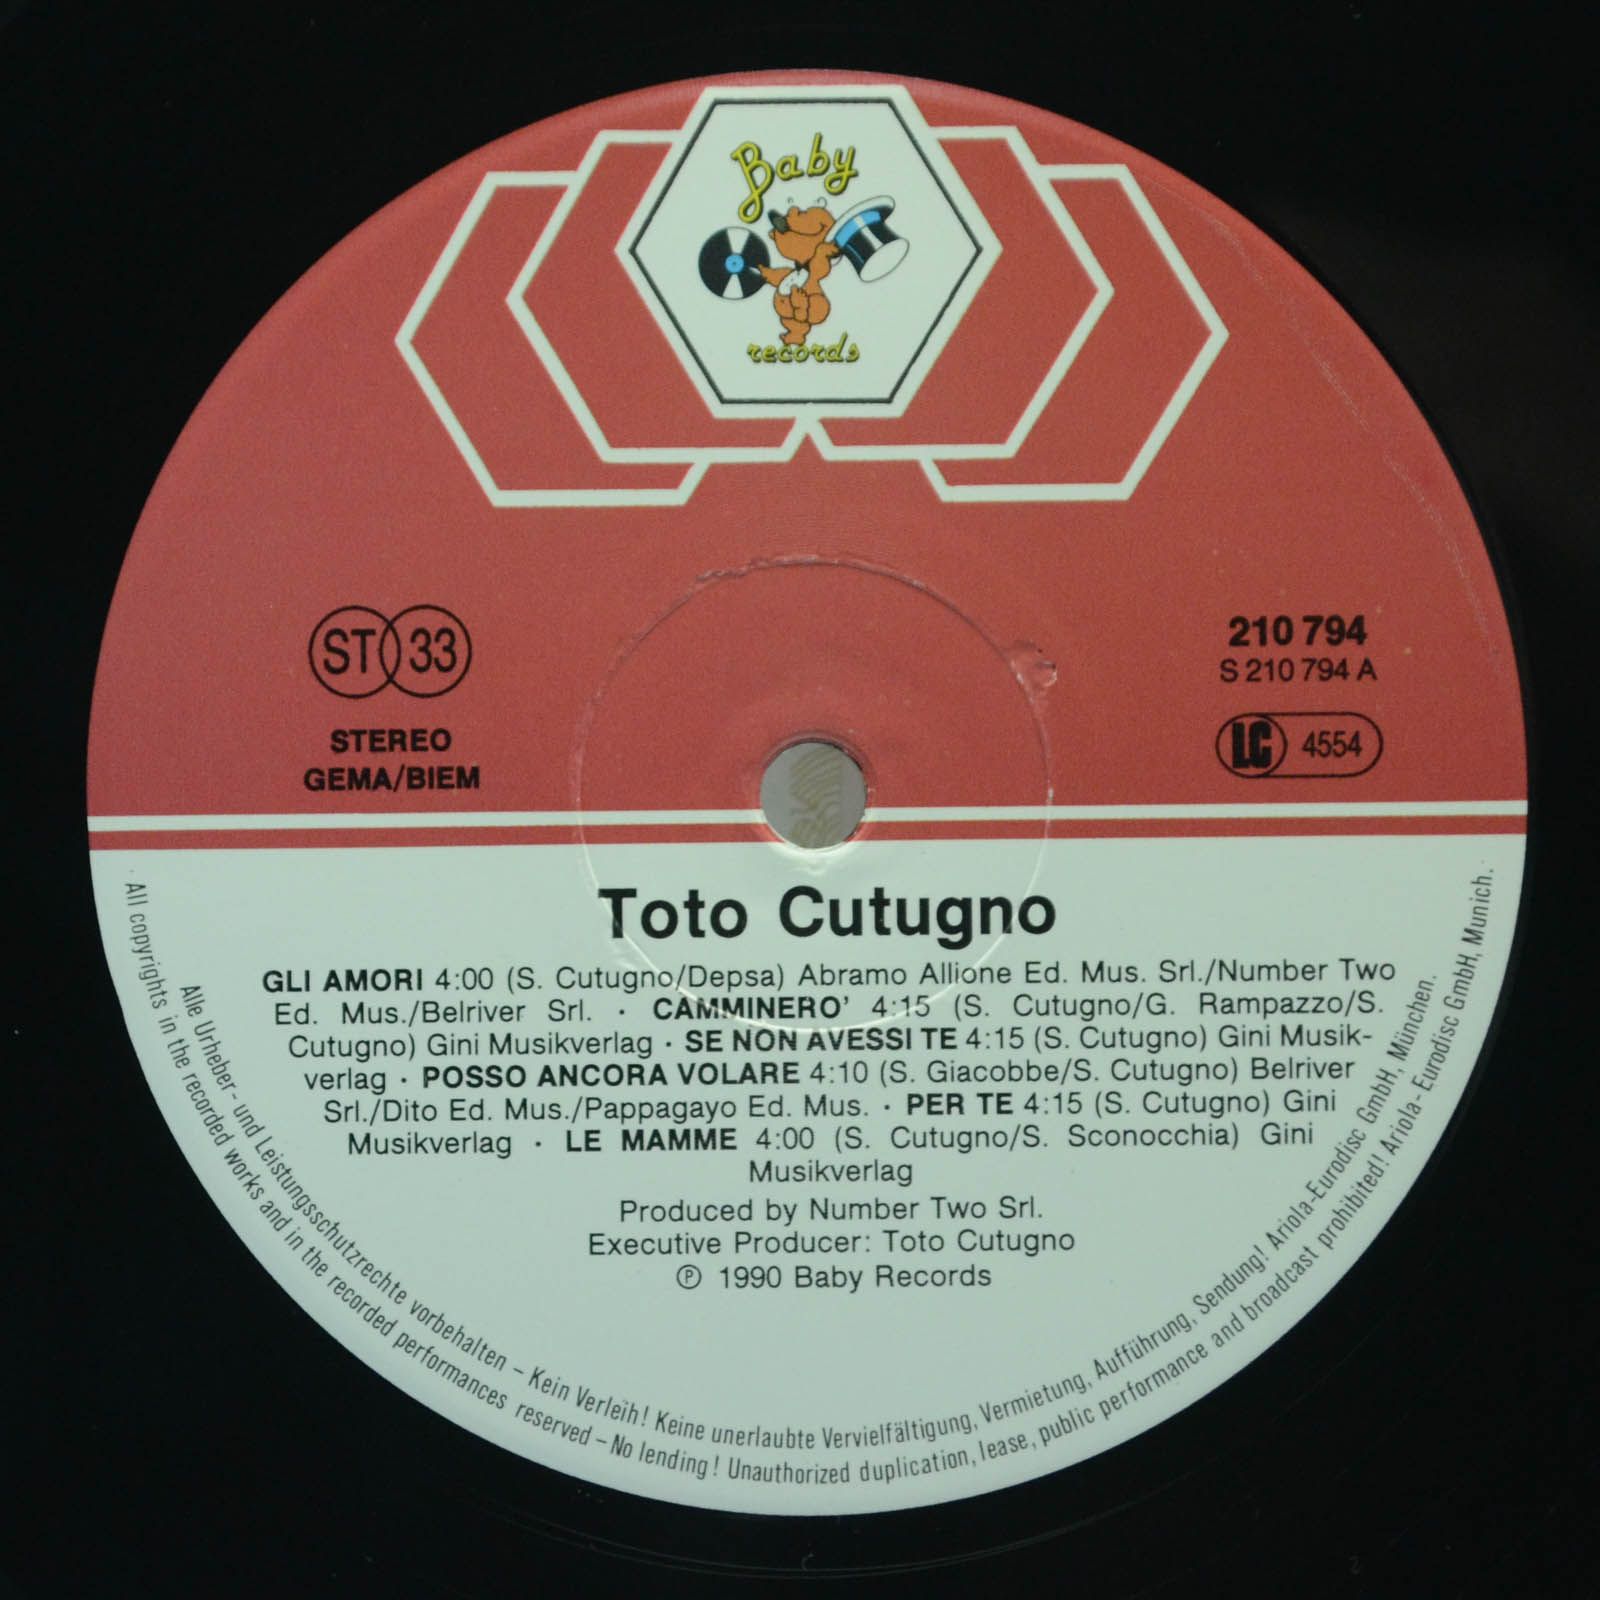 Toto Cutugno — Toto Cutugno, 1990